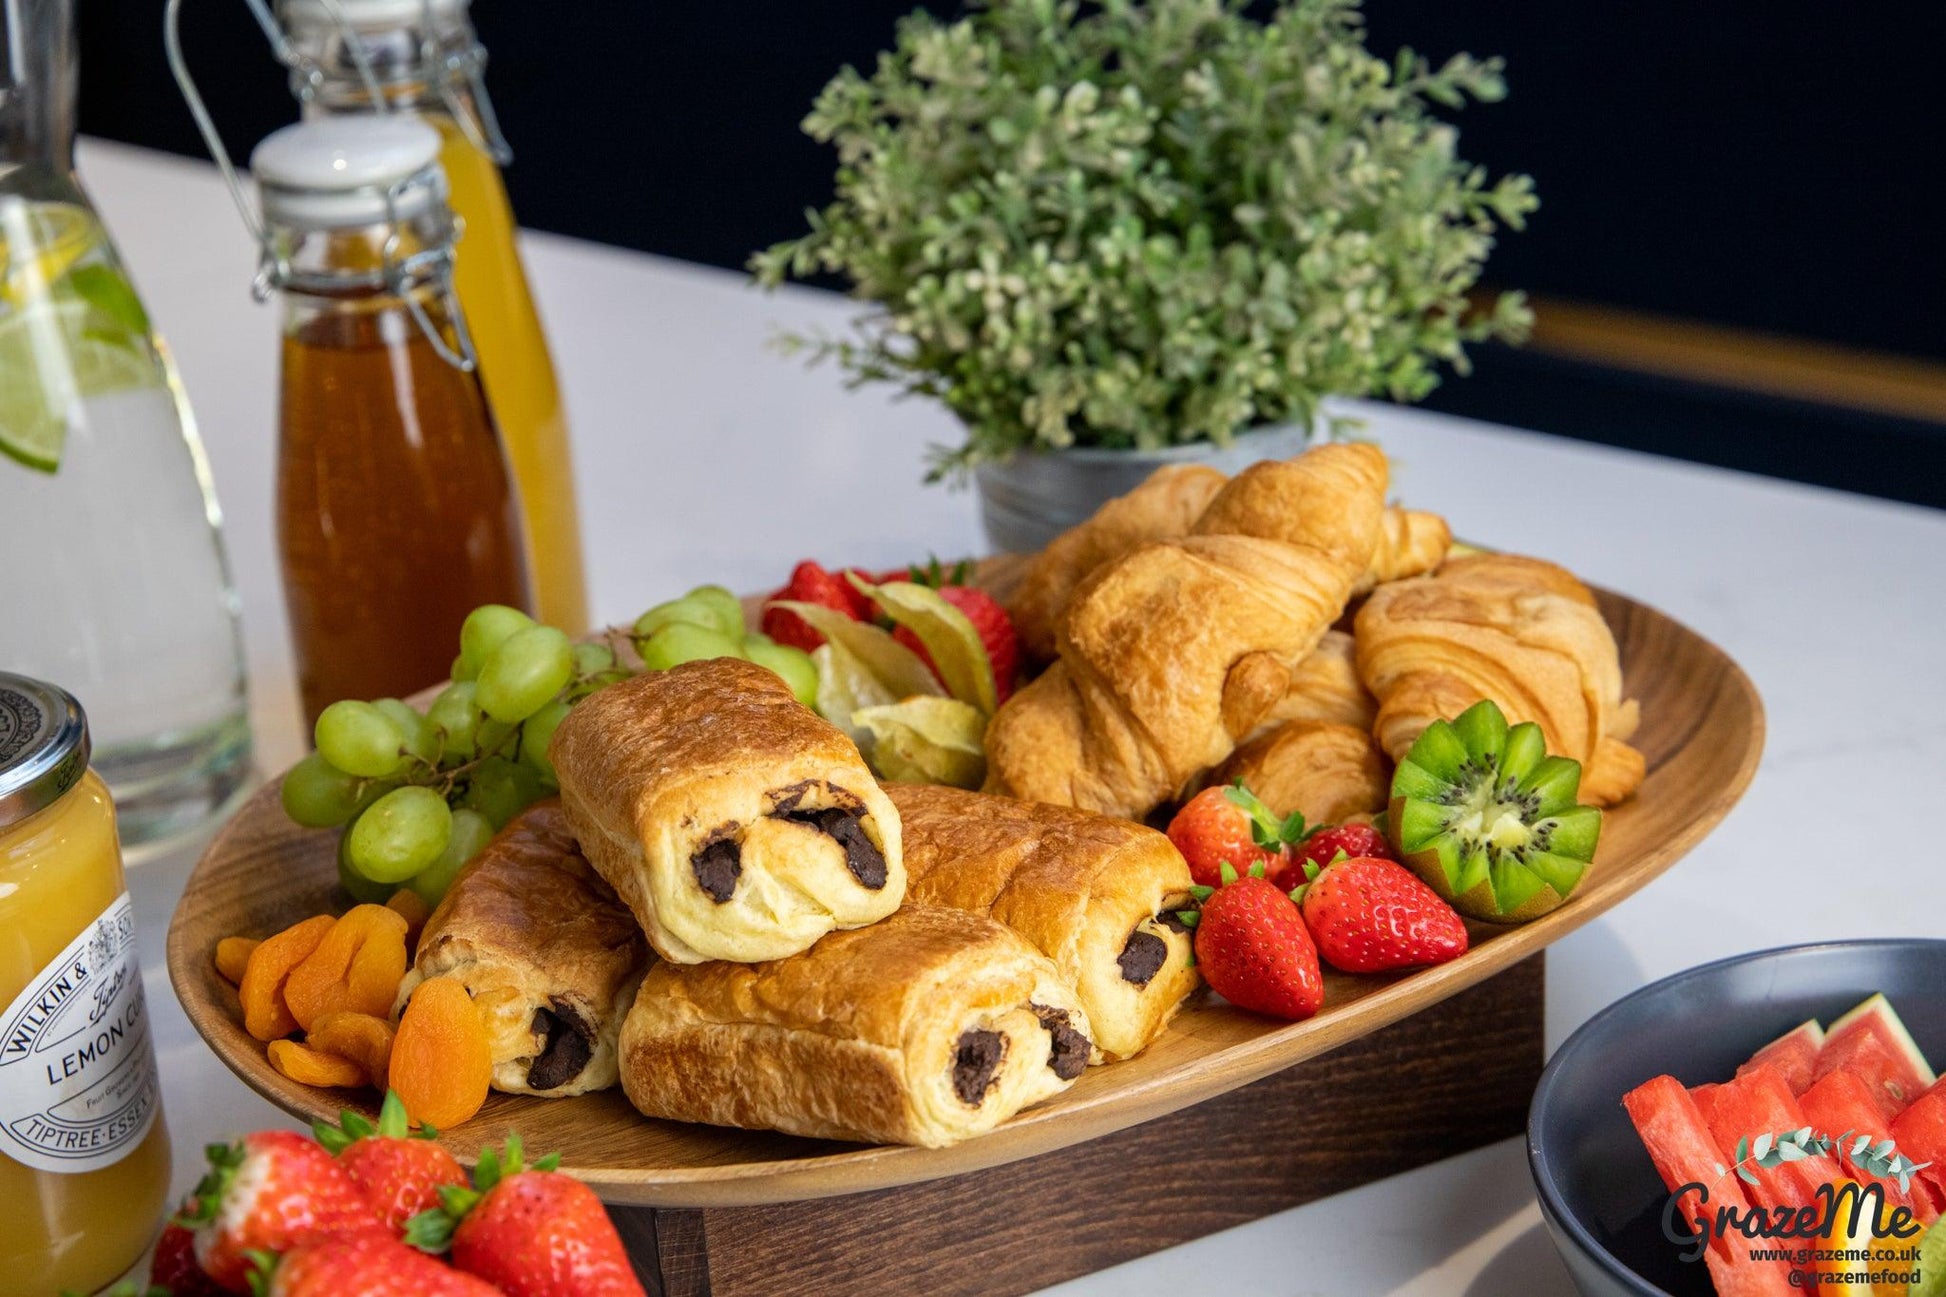 The Breakfast Grazing Table - GrazeMe Ltd